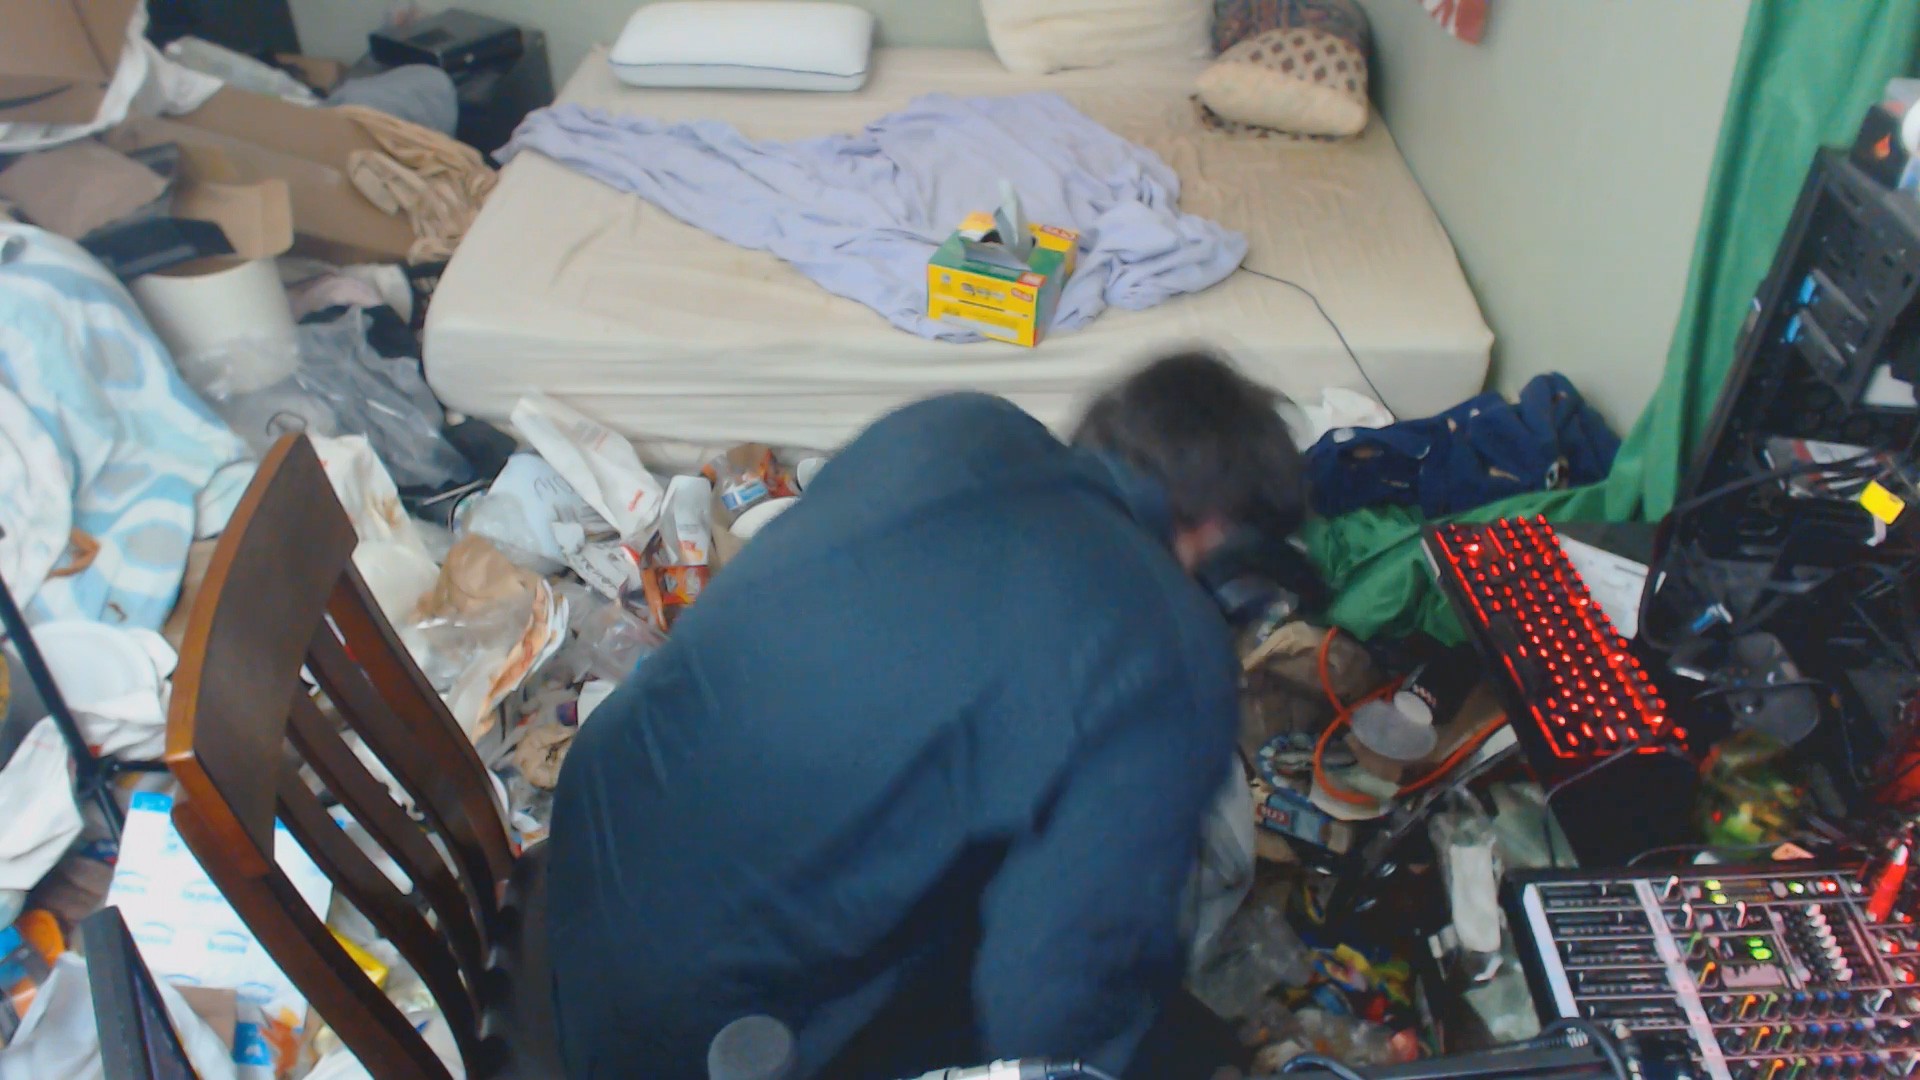 13 năm sống chung với rác, chai nước tiểu và giòi bọ, game thủ livestream cảnh dọn phòng khiến ai cũng buồn nôn - Ảnh 5.